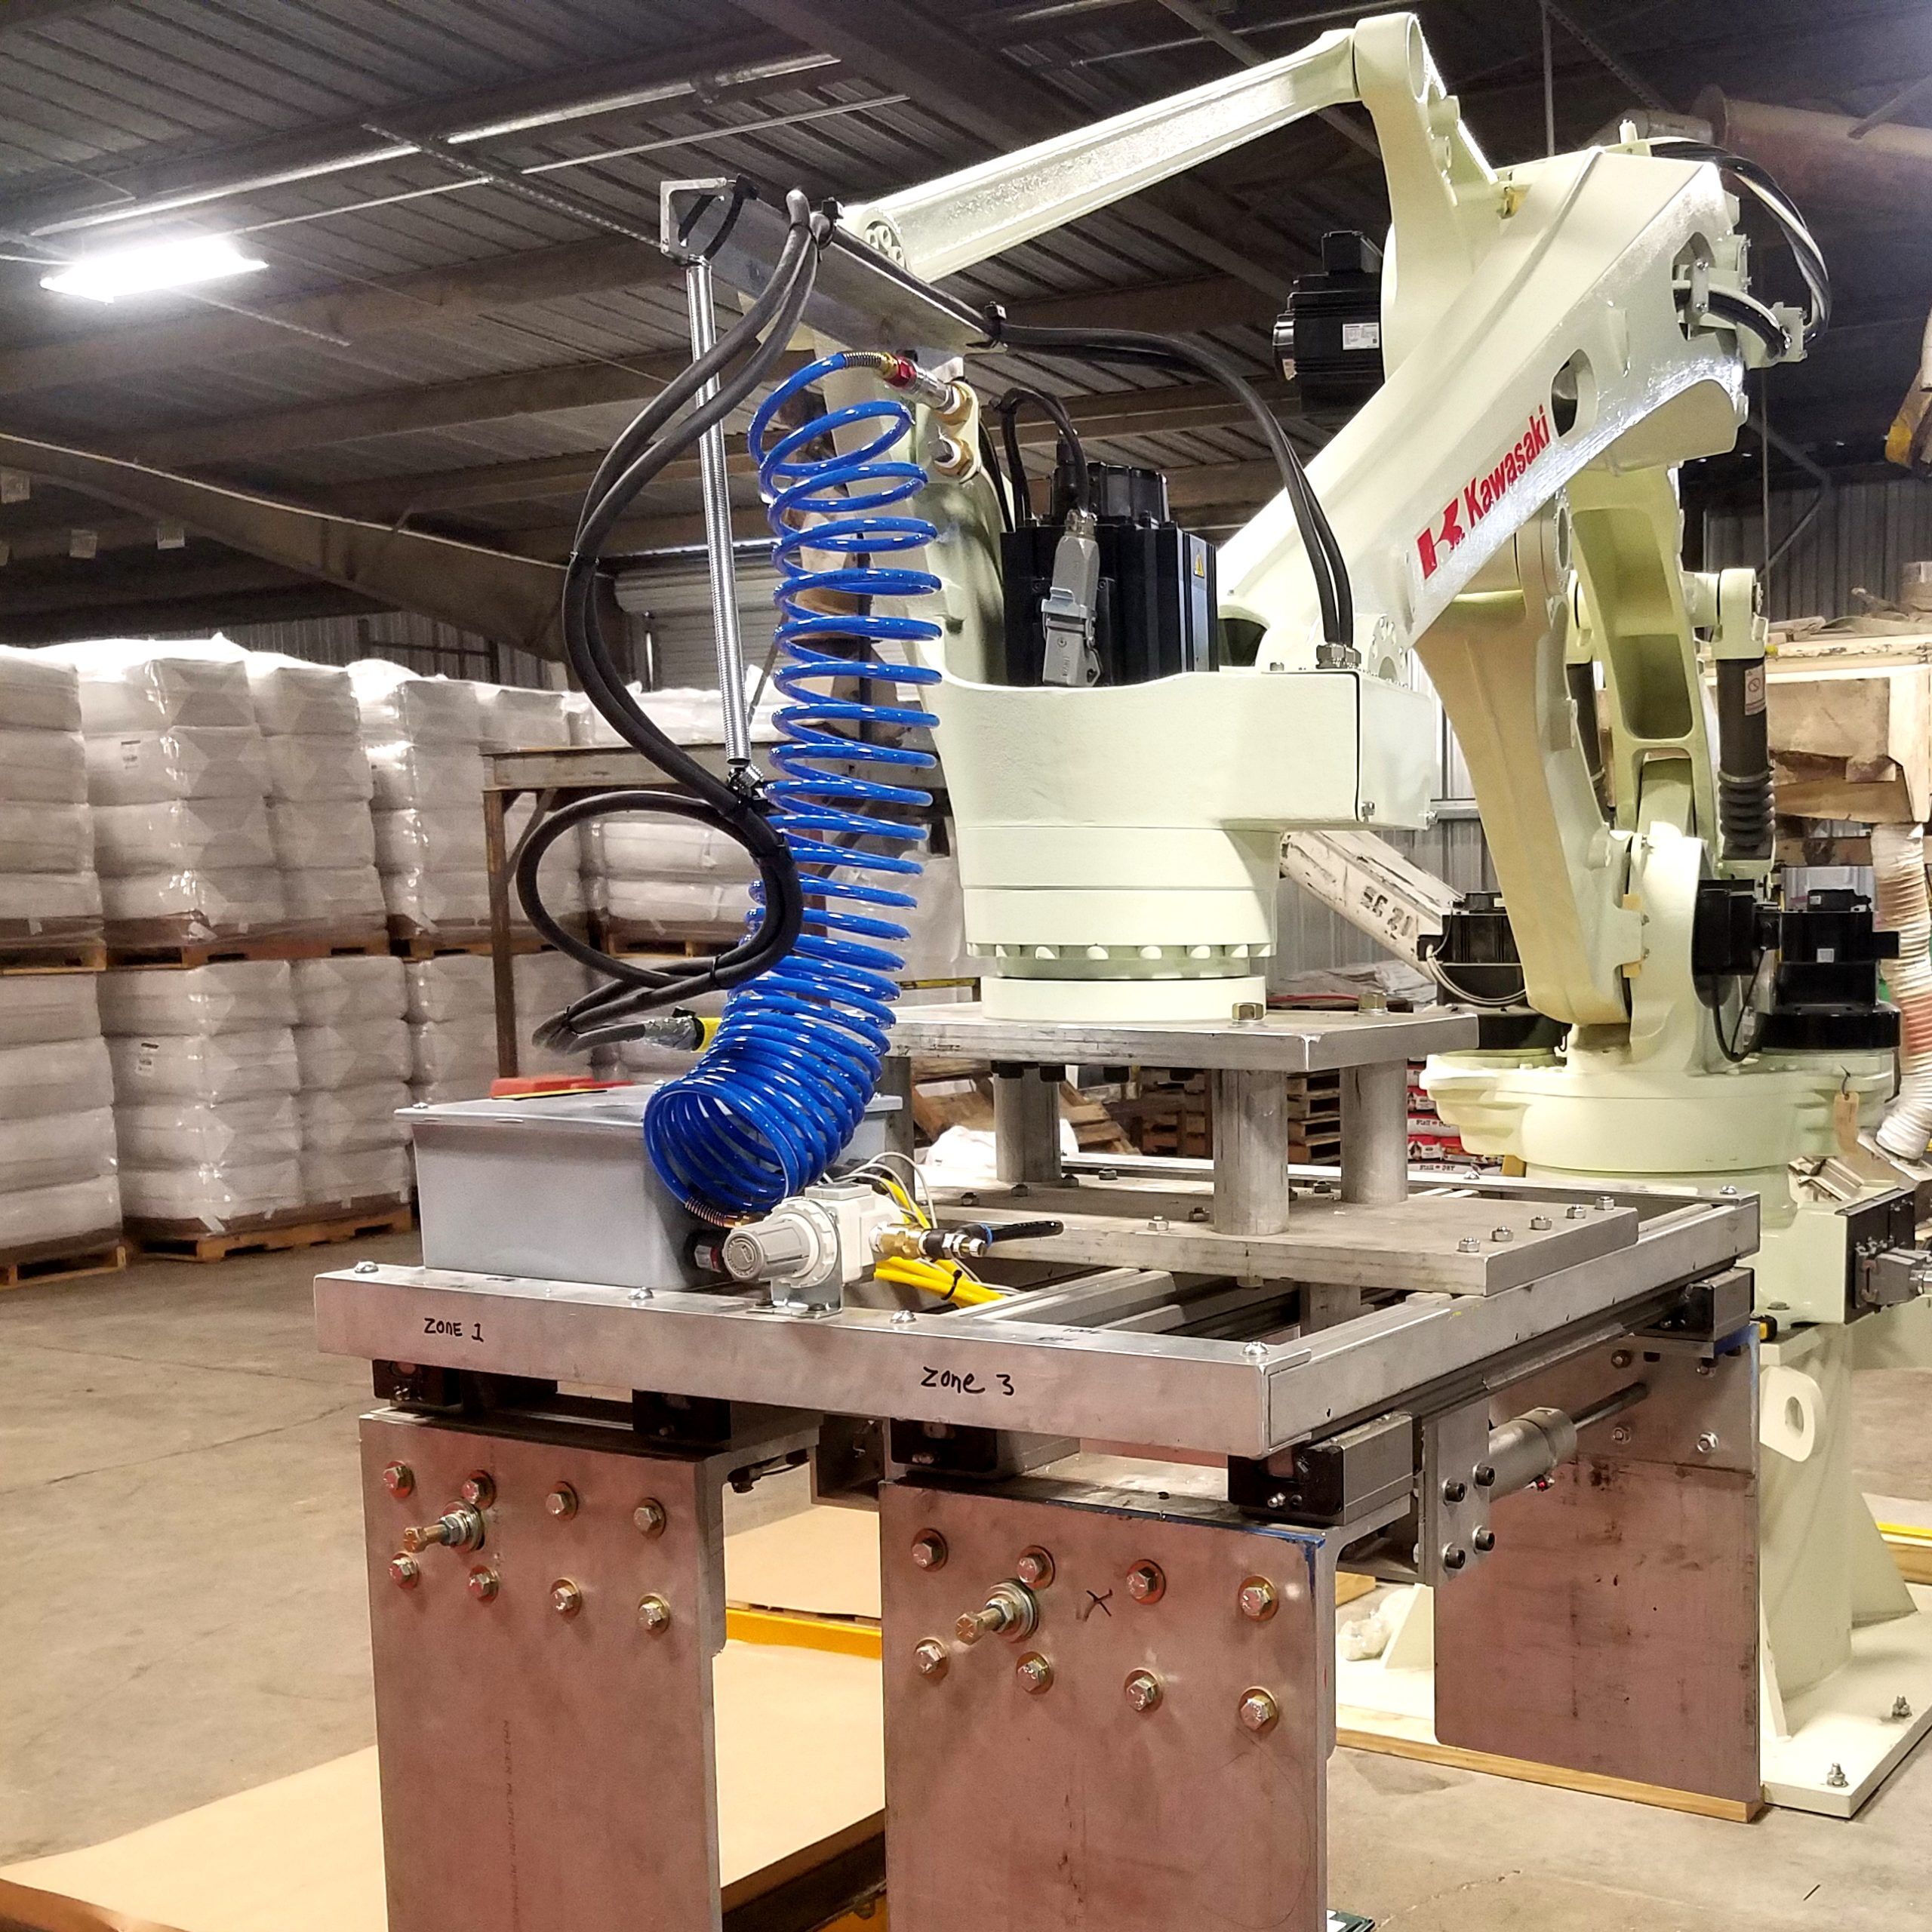 250kg Payload Rotating Base - RobotShop